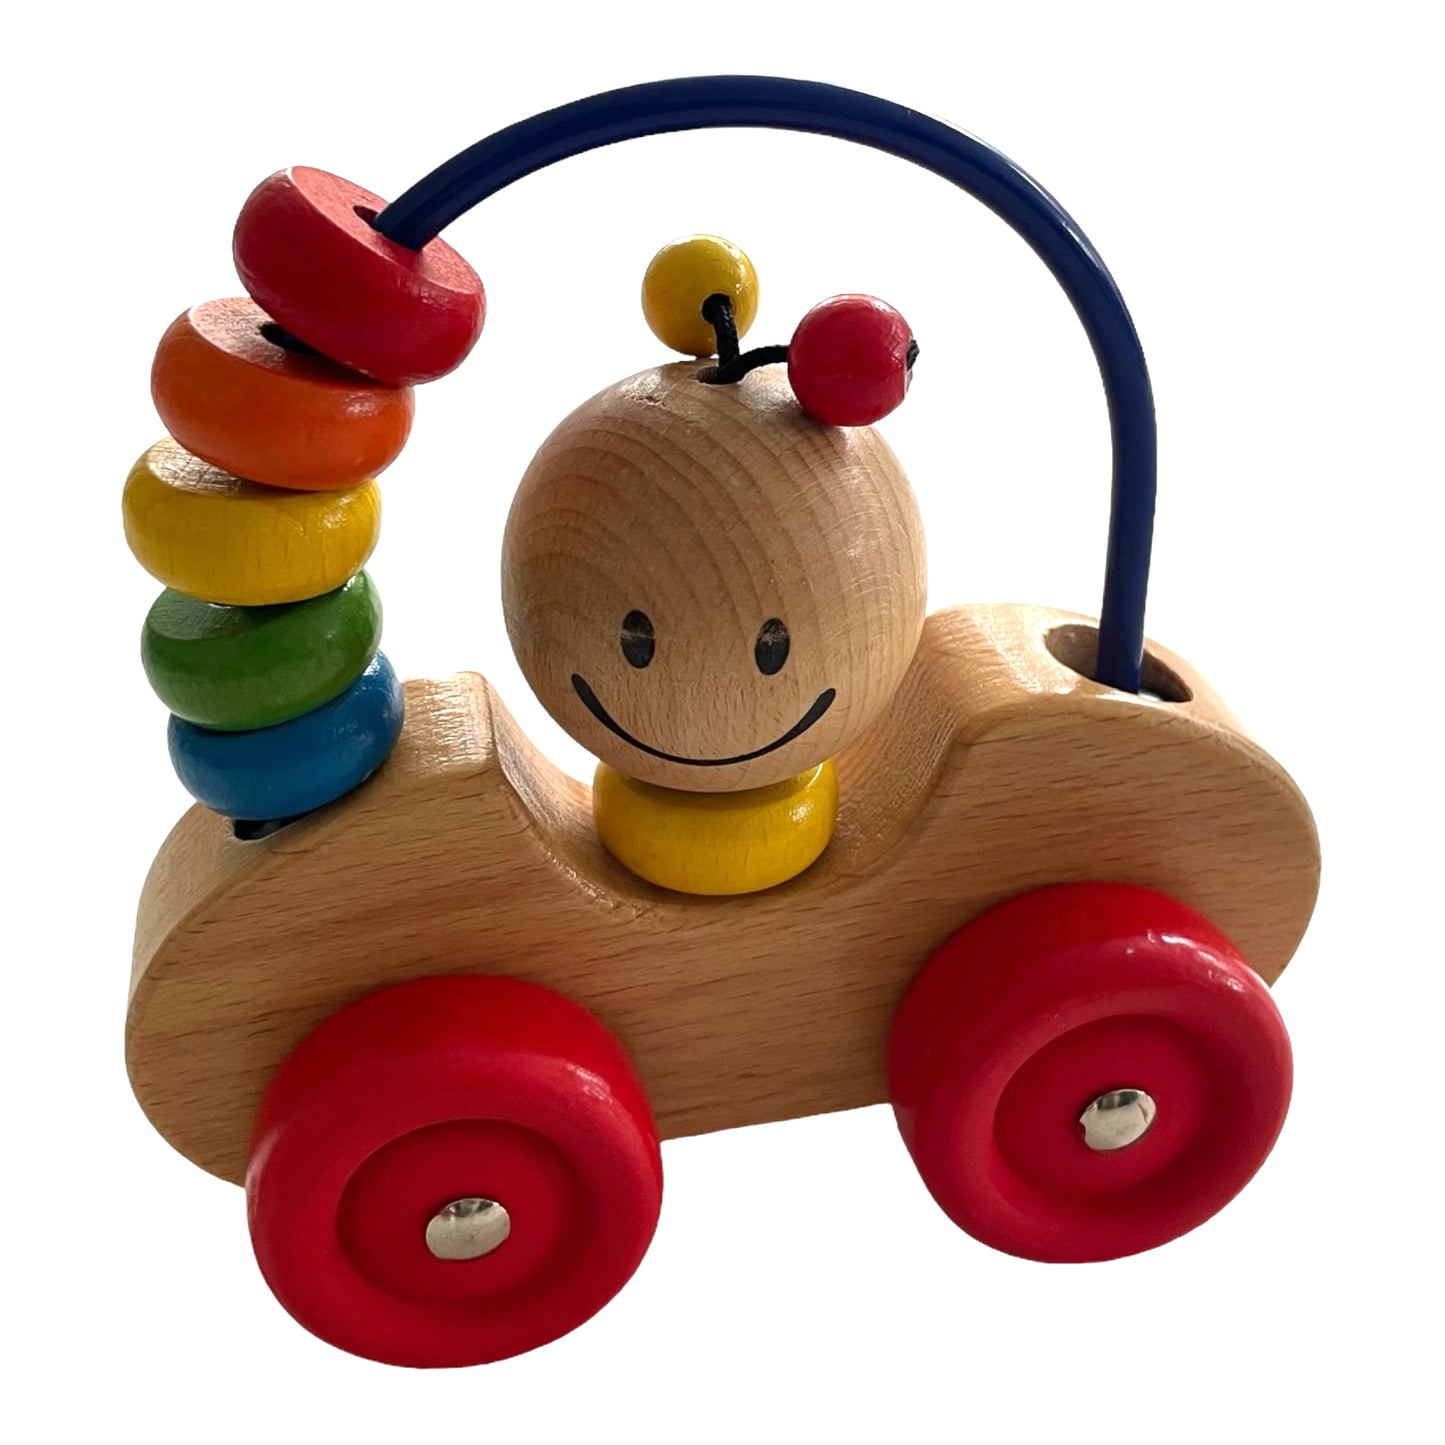 Speedy Car - Baby wooden toy